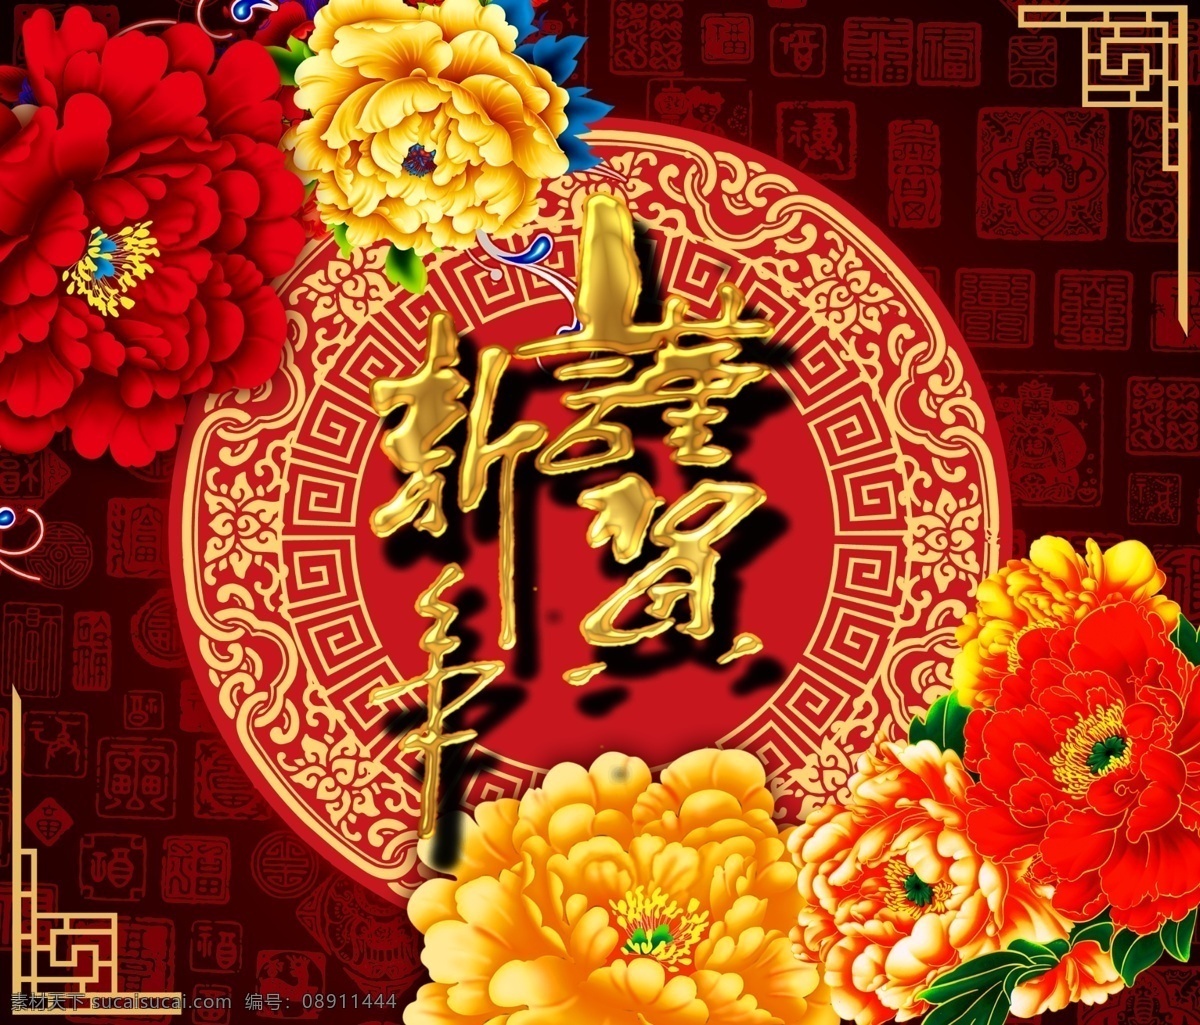 新年 贺岁 中国 风 模板 新年春节 新年贺岁 牡丹花 传统文化 古典花朵 门贴 喜庆 中国元素 印章花纹 图案背景 海报模板 psd素材 分层素材 红色